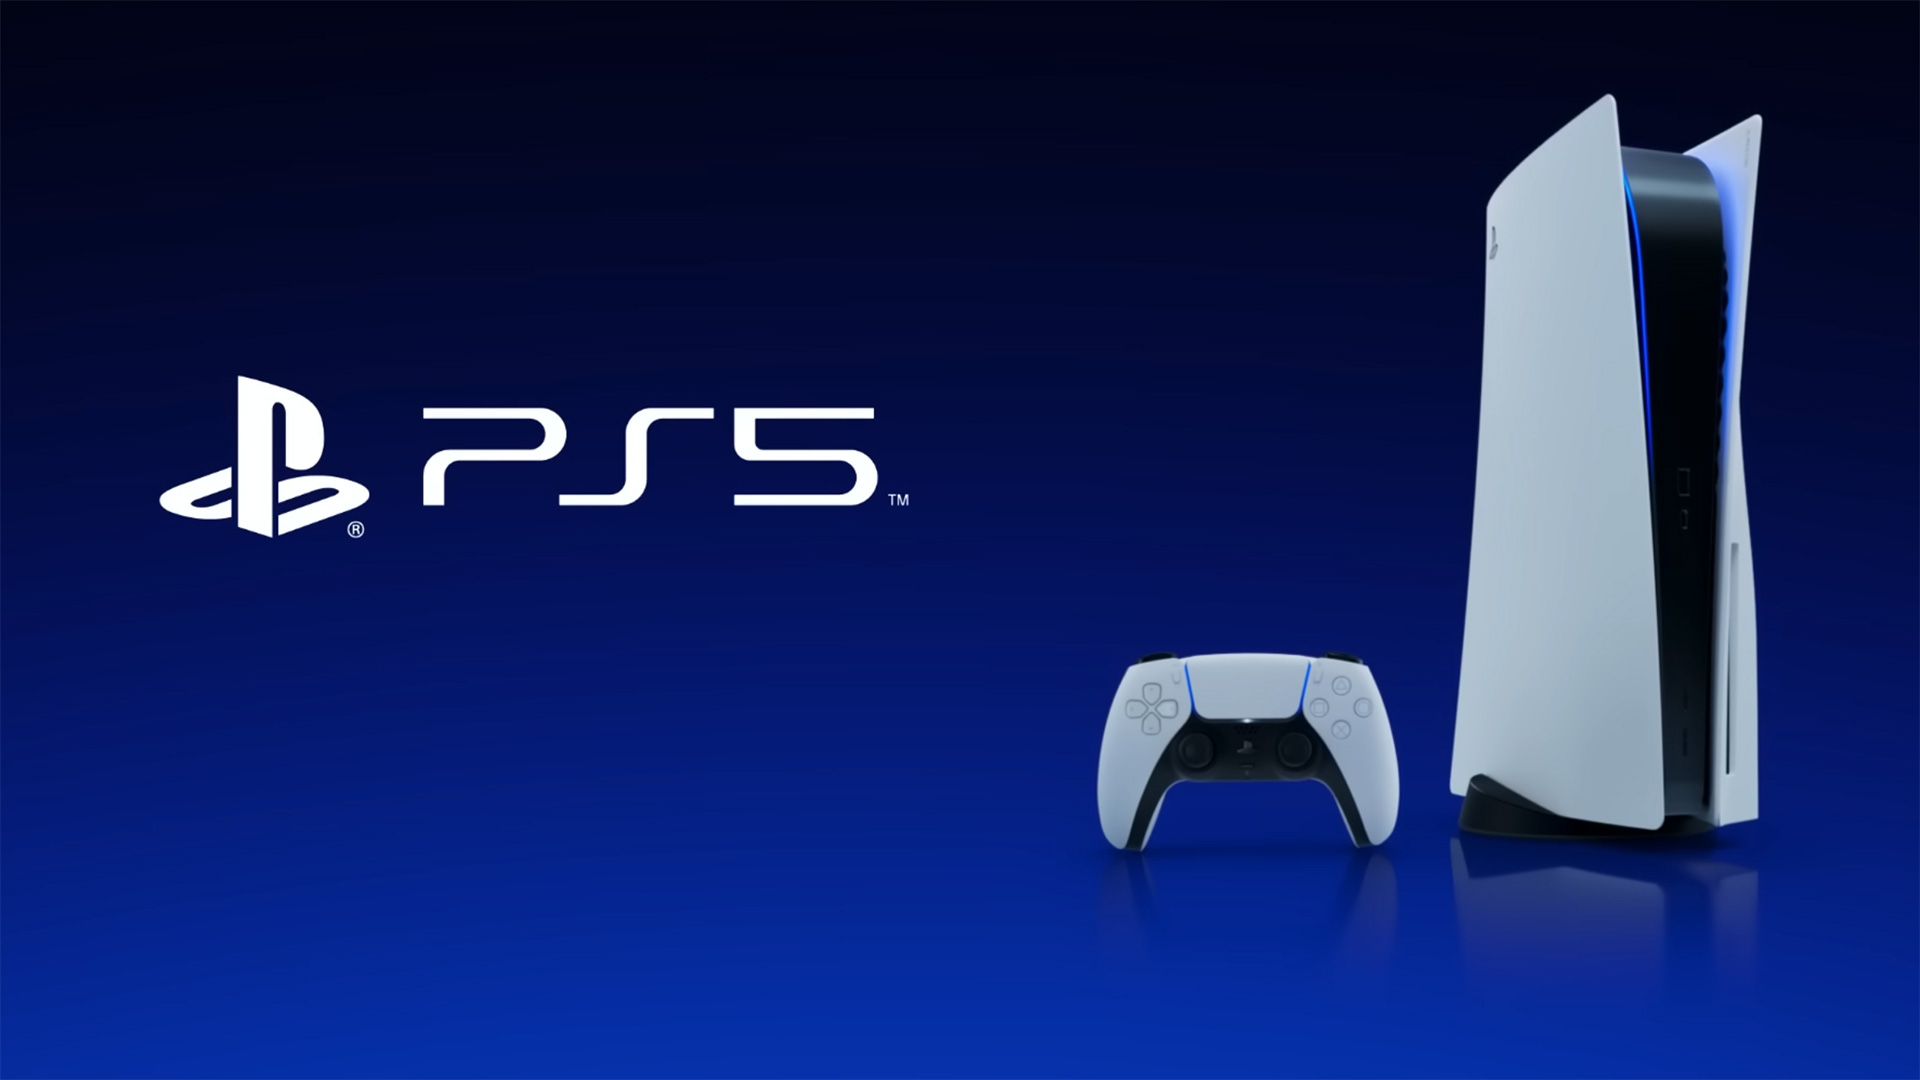 Jogos que irão movimentar o PlayStation VR2 em dezembro